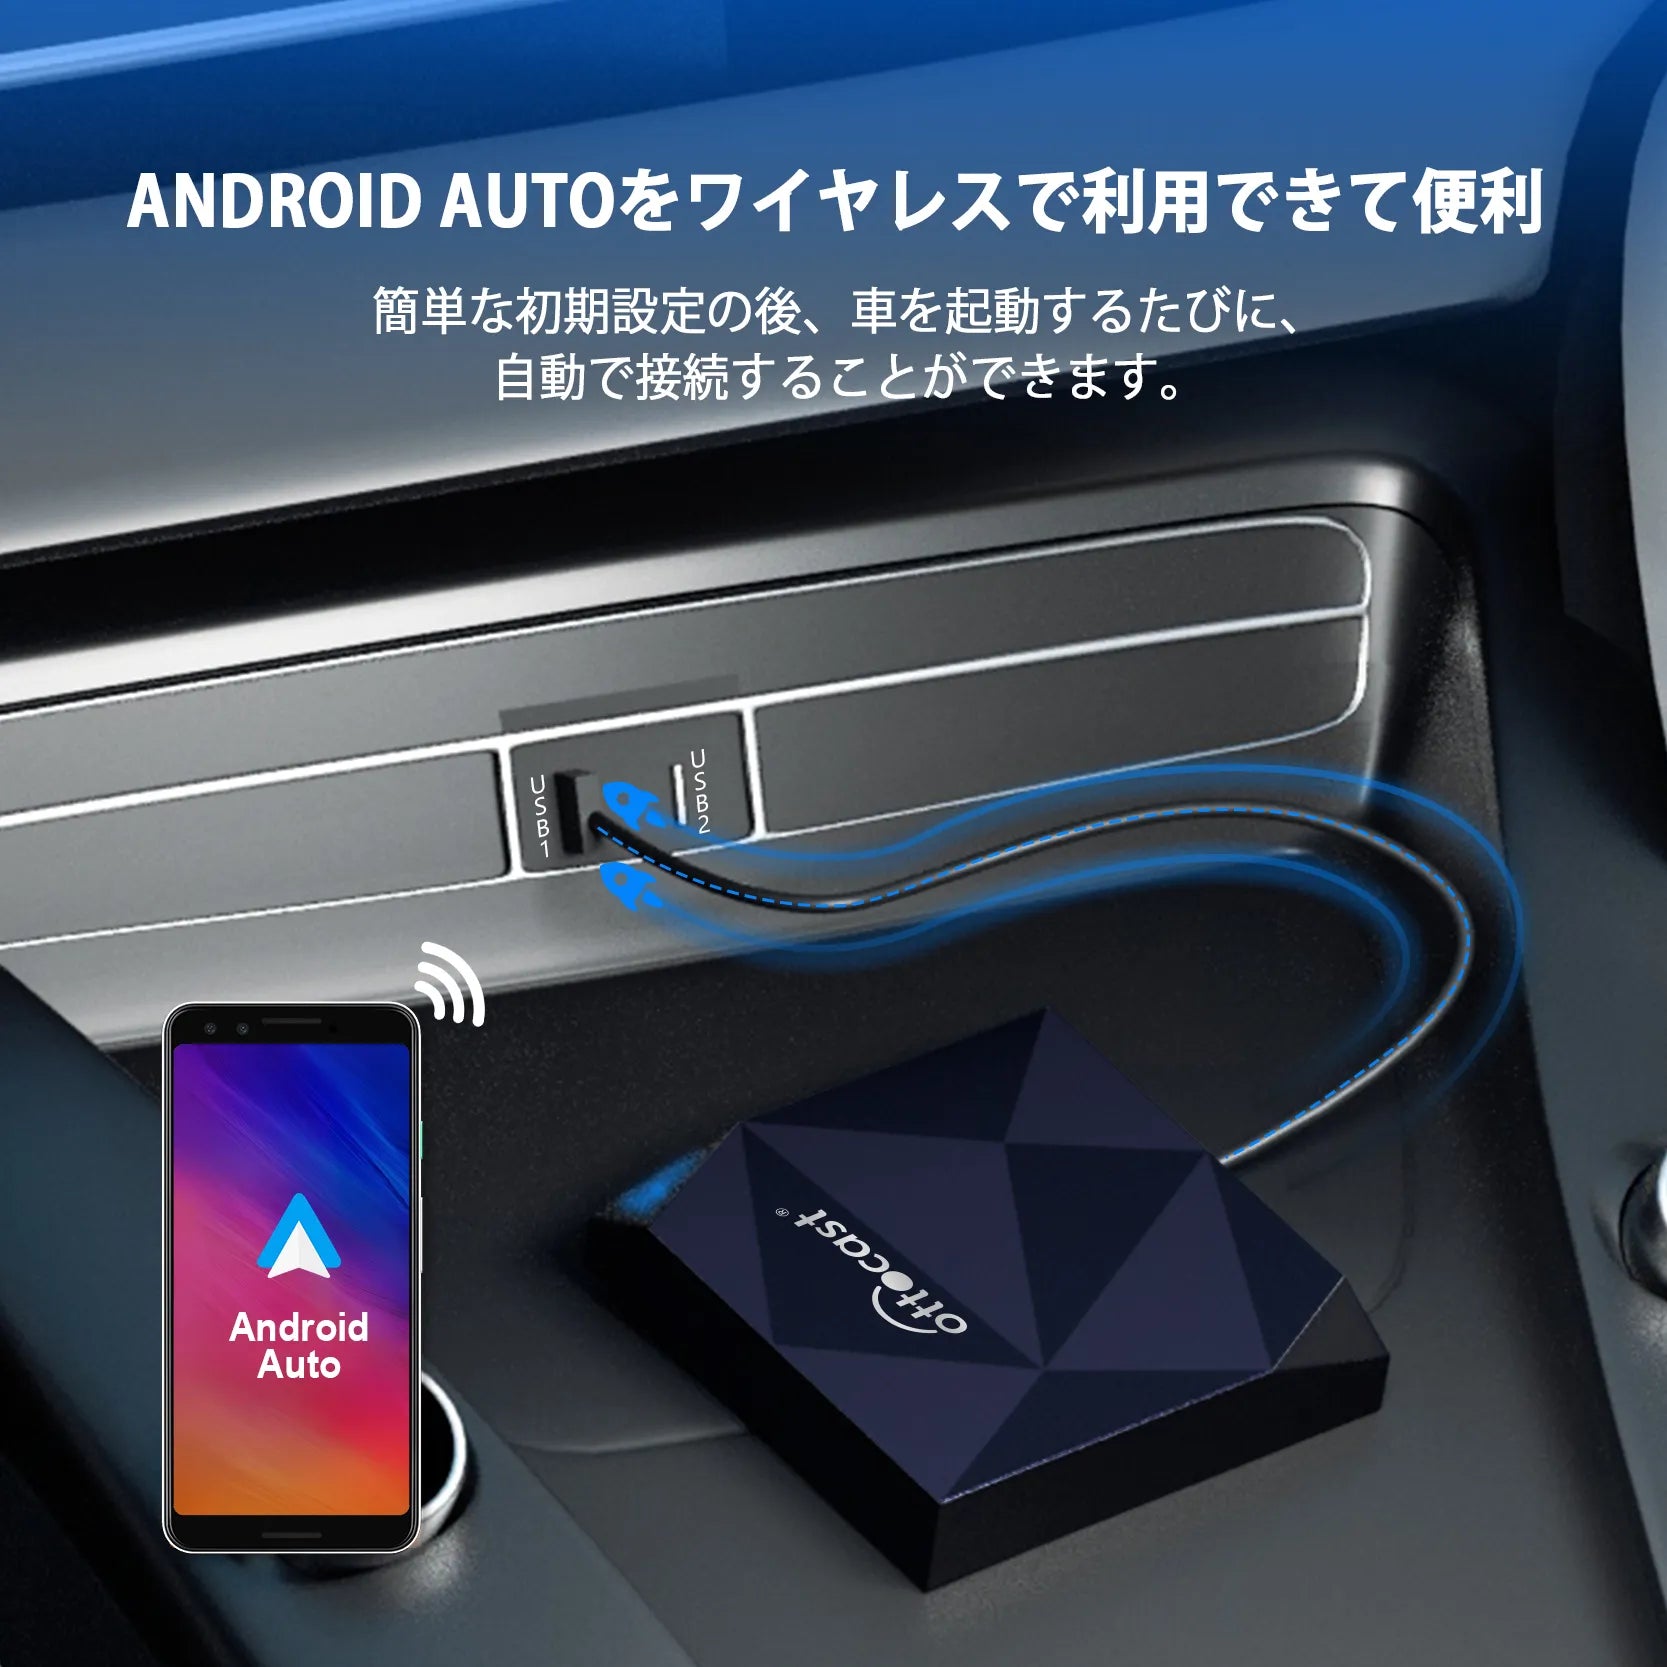 オットキャストOttocast A2Air android auto 無線化アダプター アンドロイドオートワイヤレス